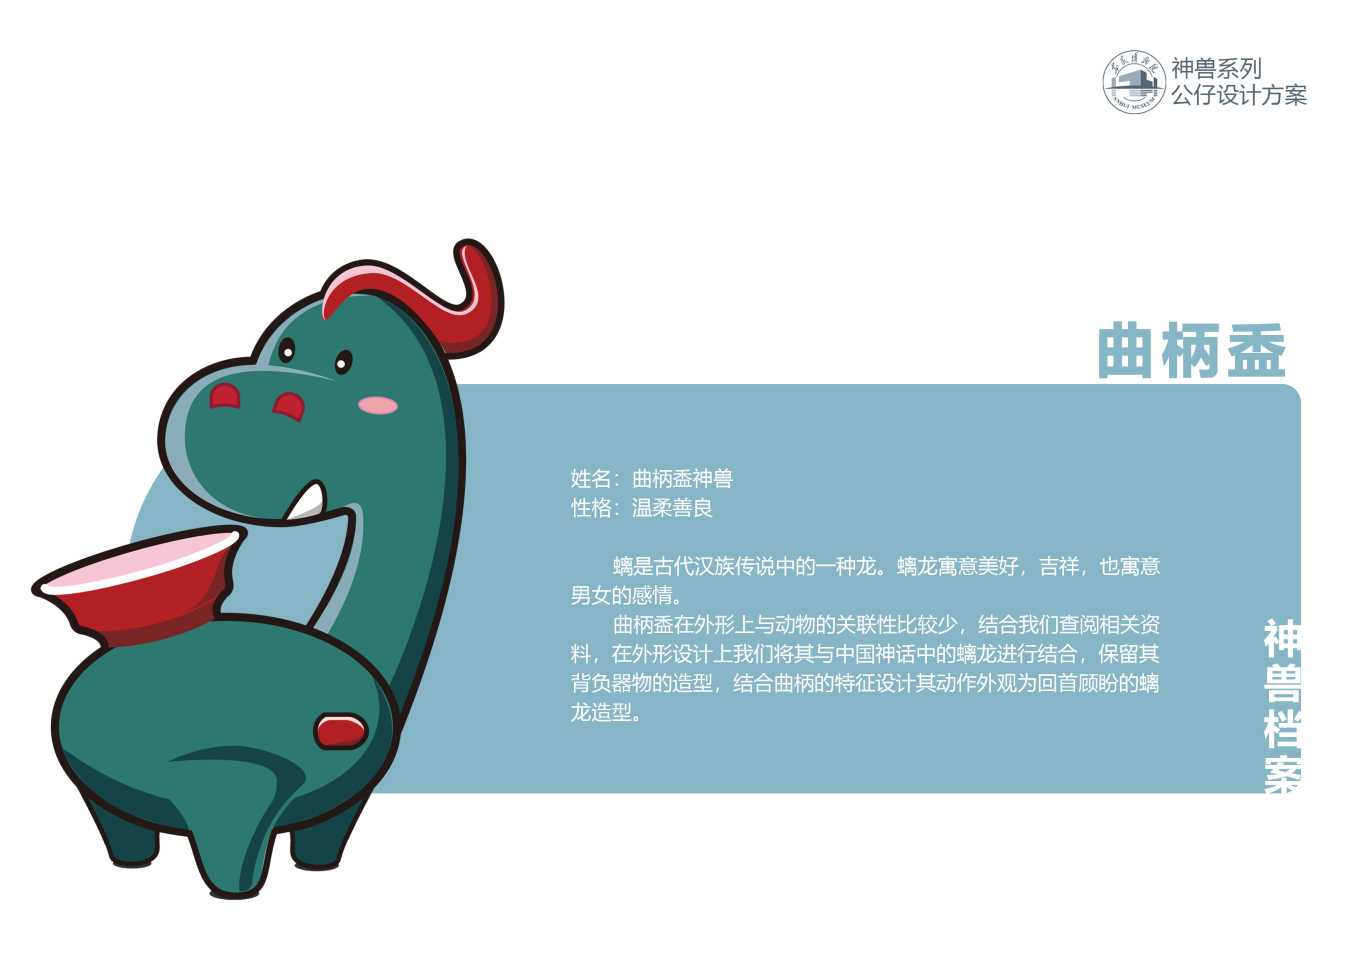 安徽博物院神兽系列卡通形象设计方案图4